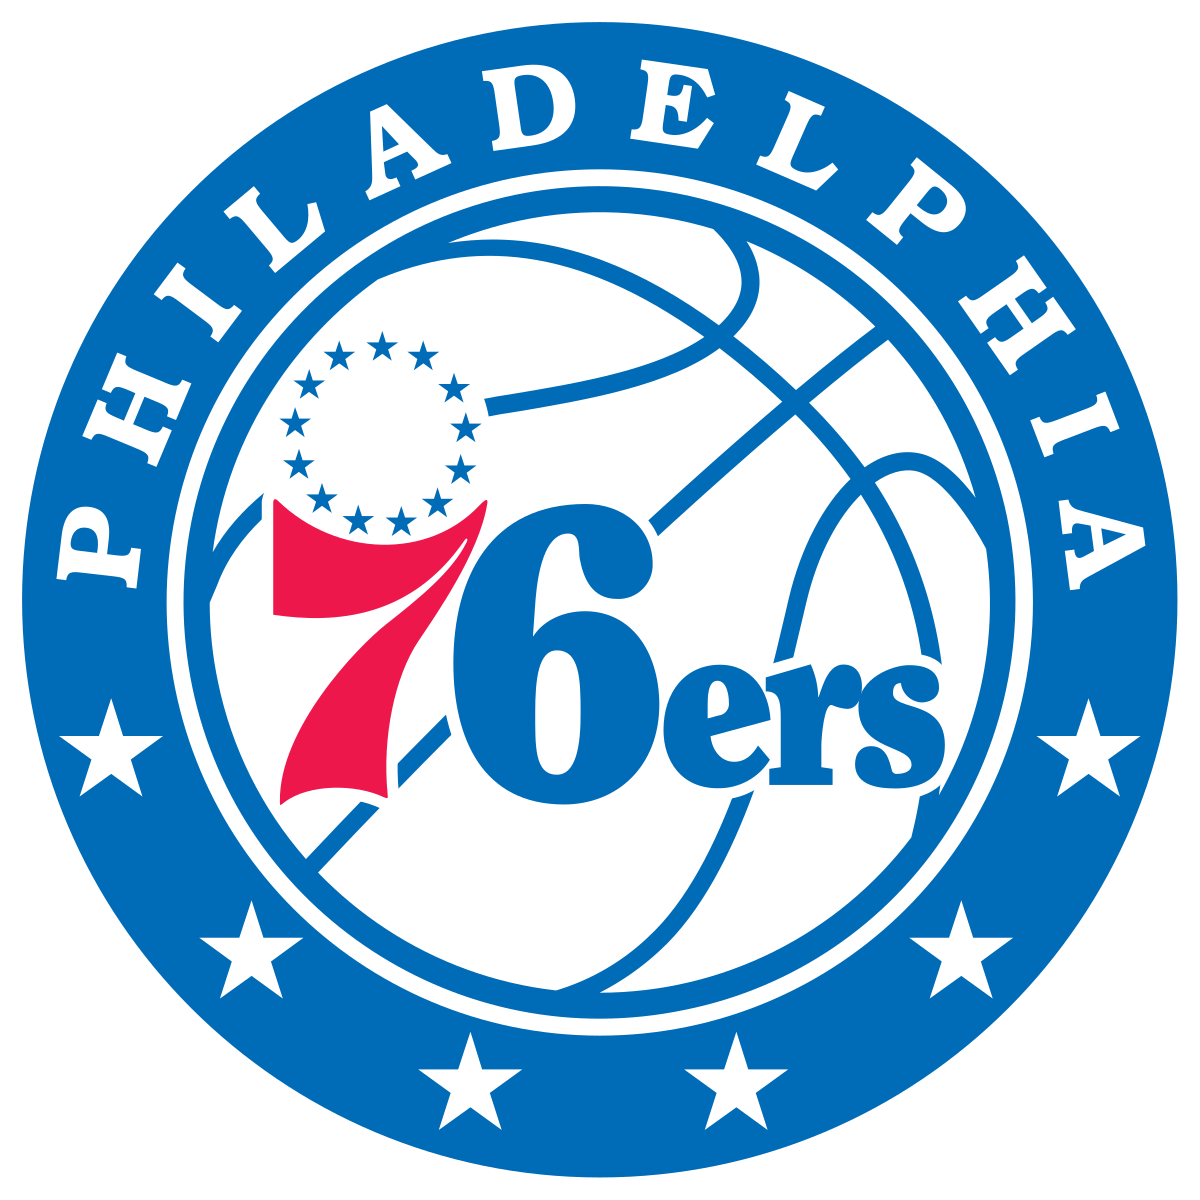 Philadelphia 76ers (Atlantic Division)